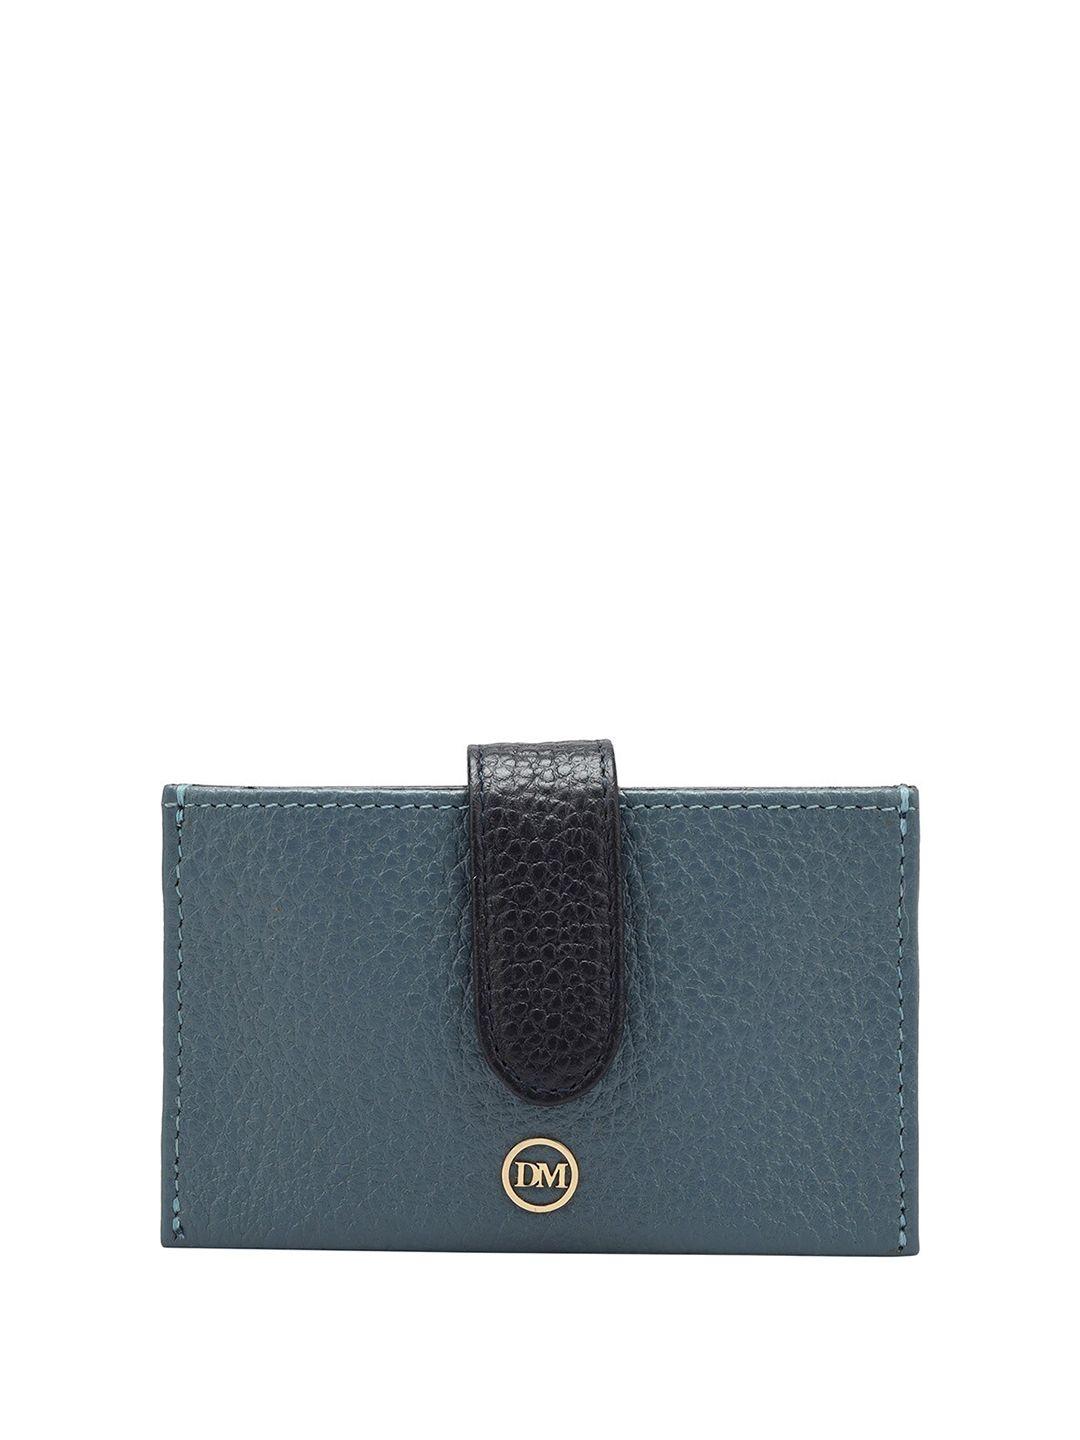 Da Milano Unisex Textured Leather Card Holder Wallet